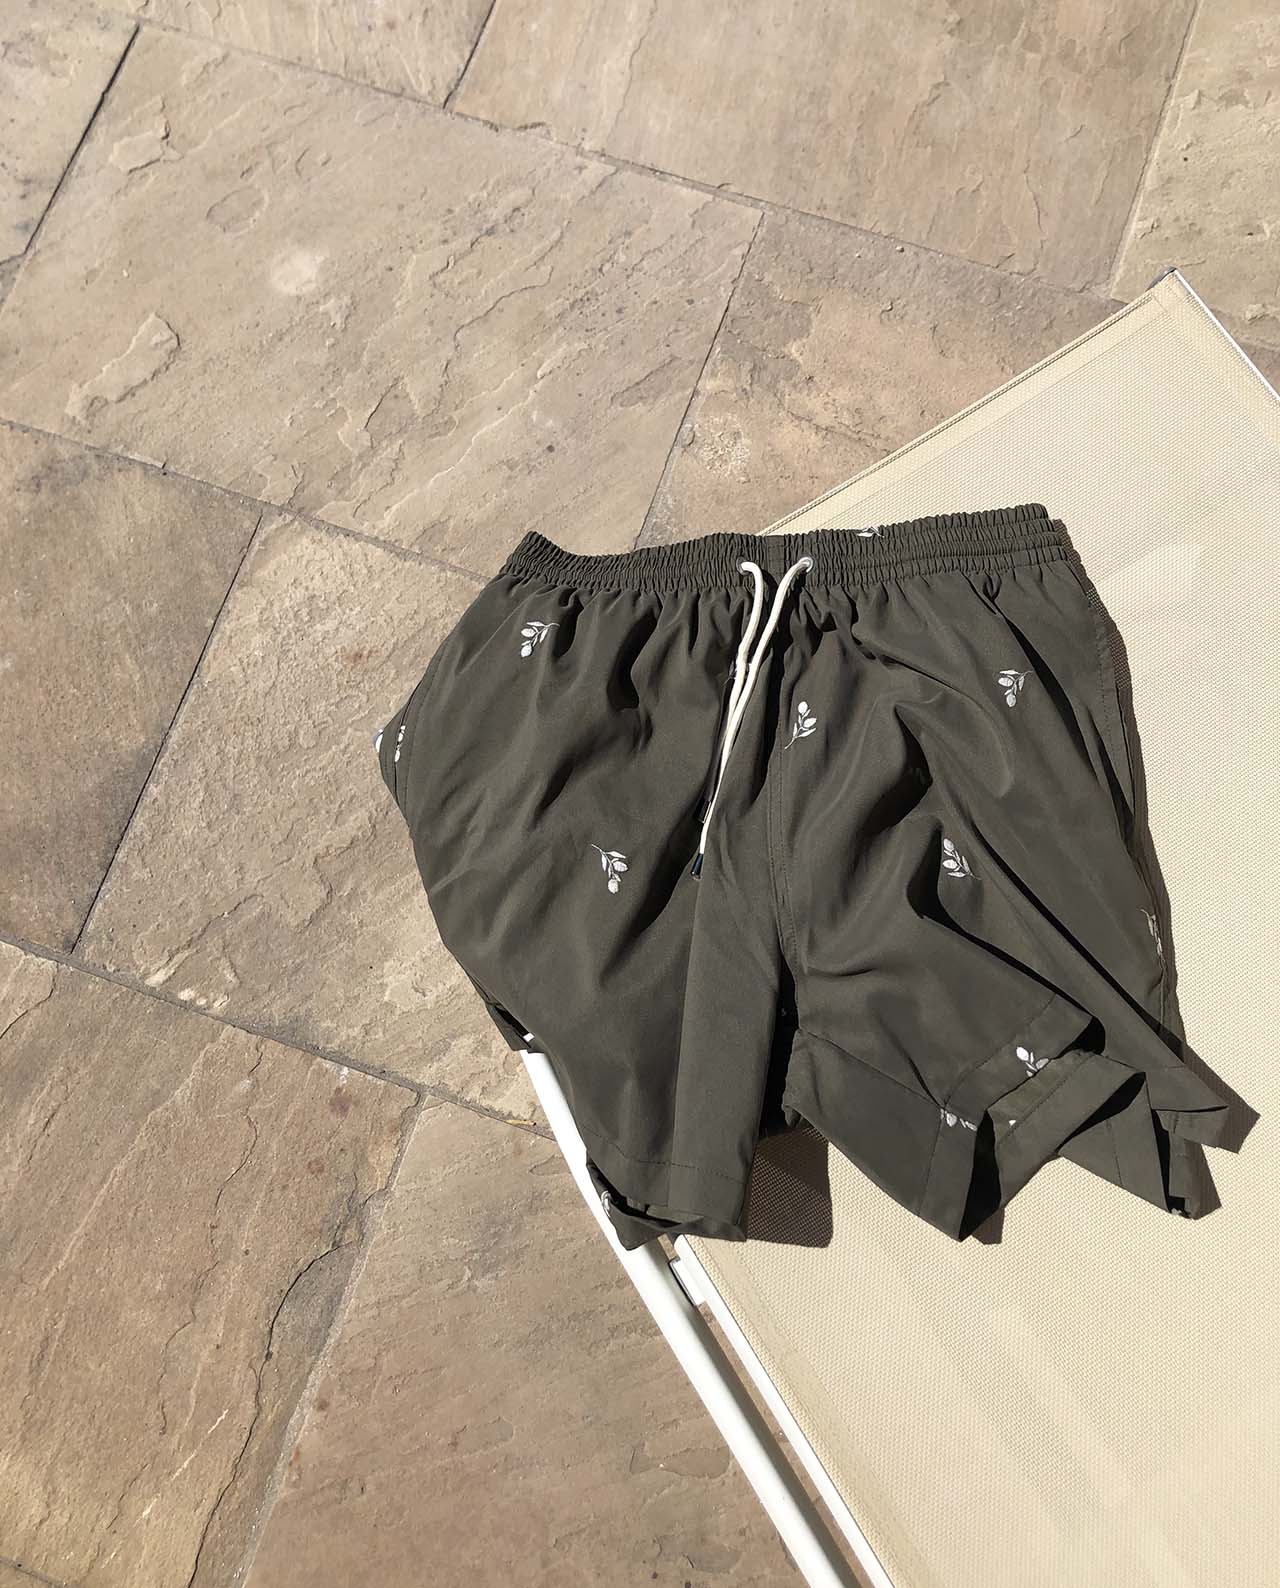 marché commun calanque swimwear maillot de bain homme polyester recyclé brodé éco-responsable éthique kaki oliviers